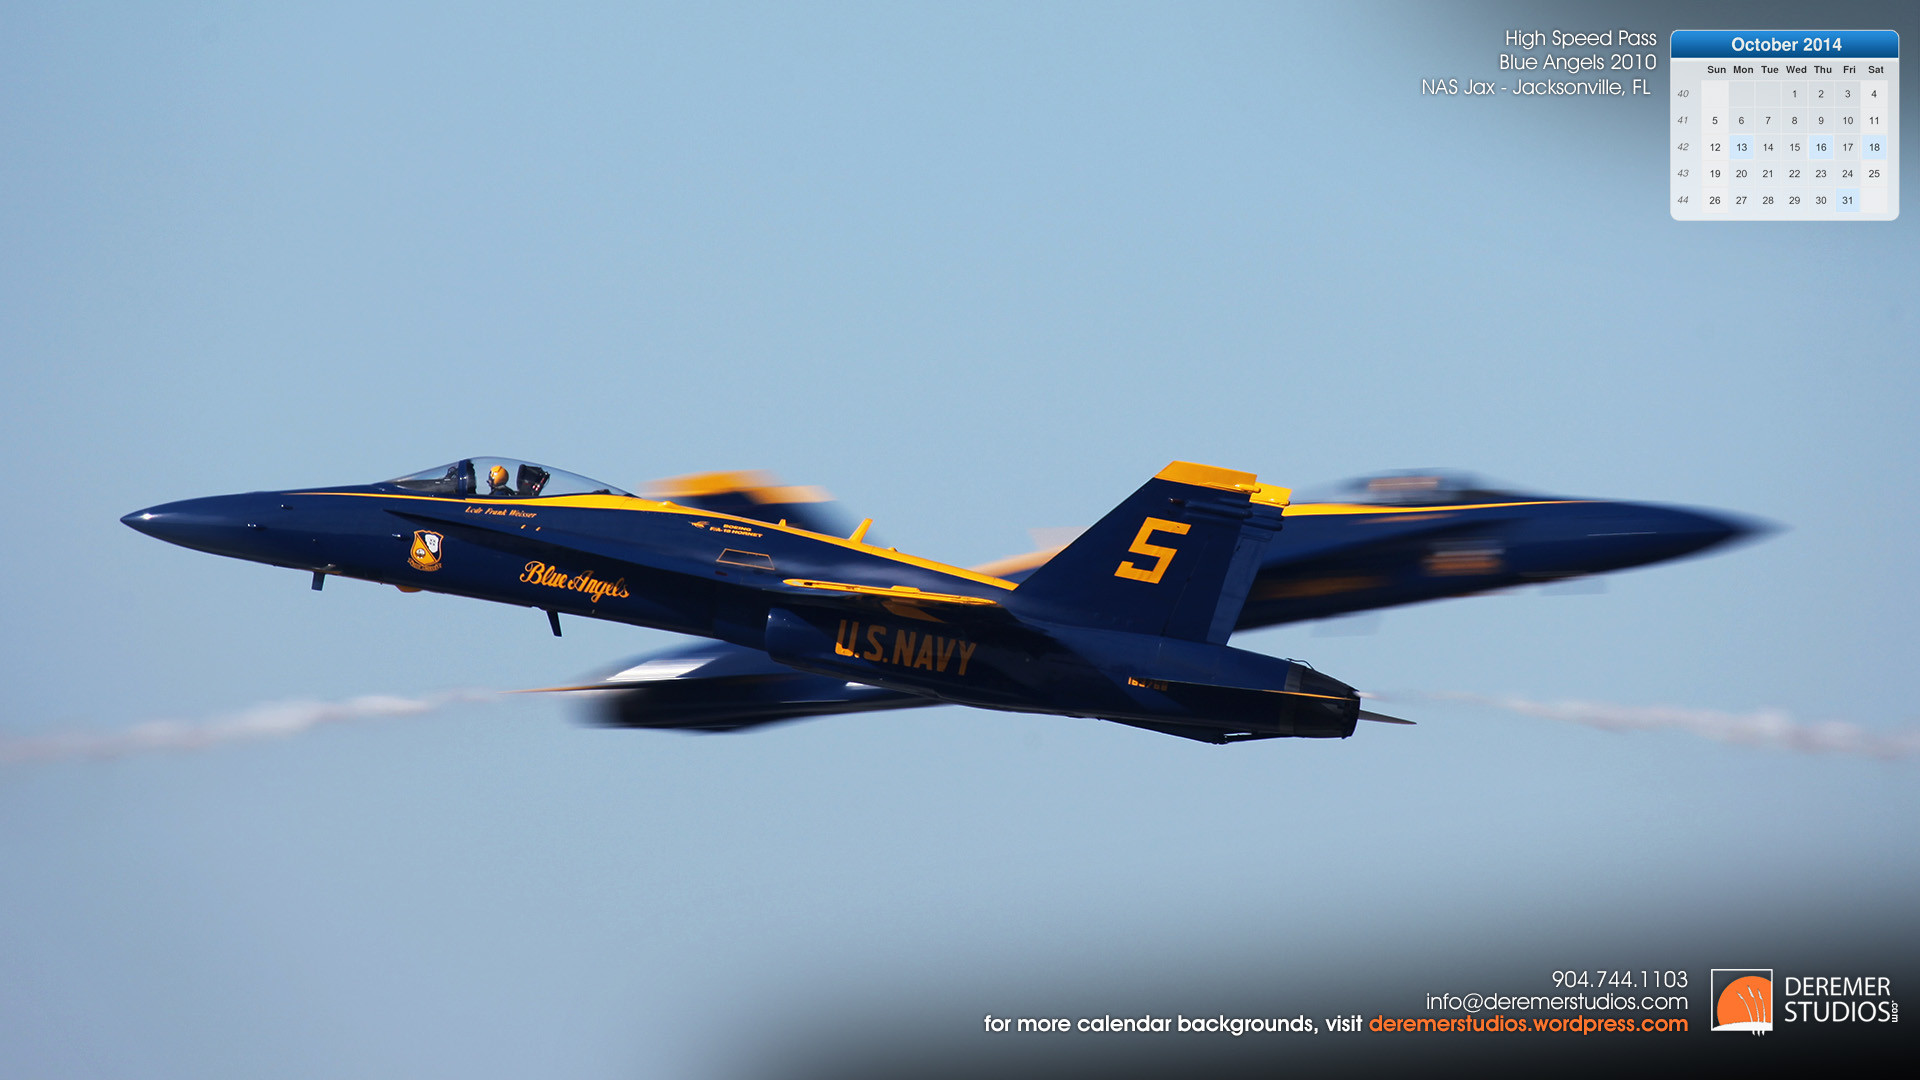 1920x1080 2014 10 – October Wallpaper – Blue Angels High Speed Pass Jacksonville FL